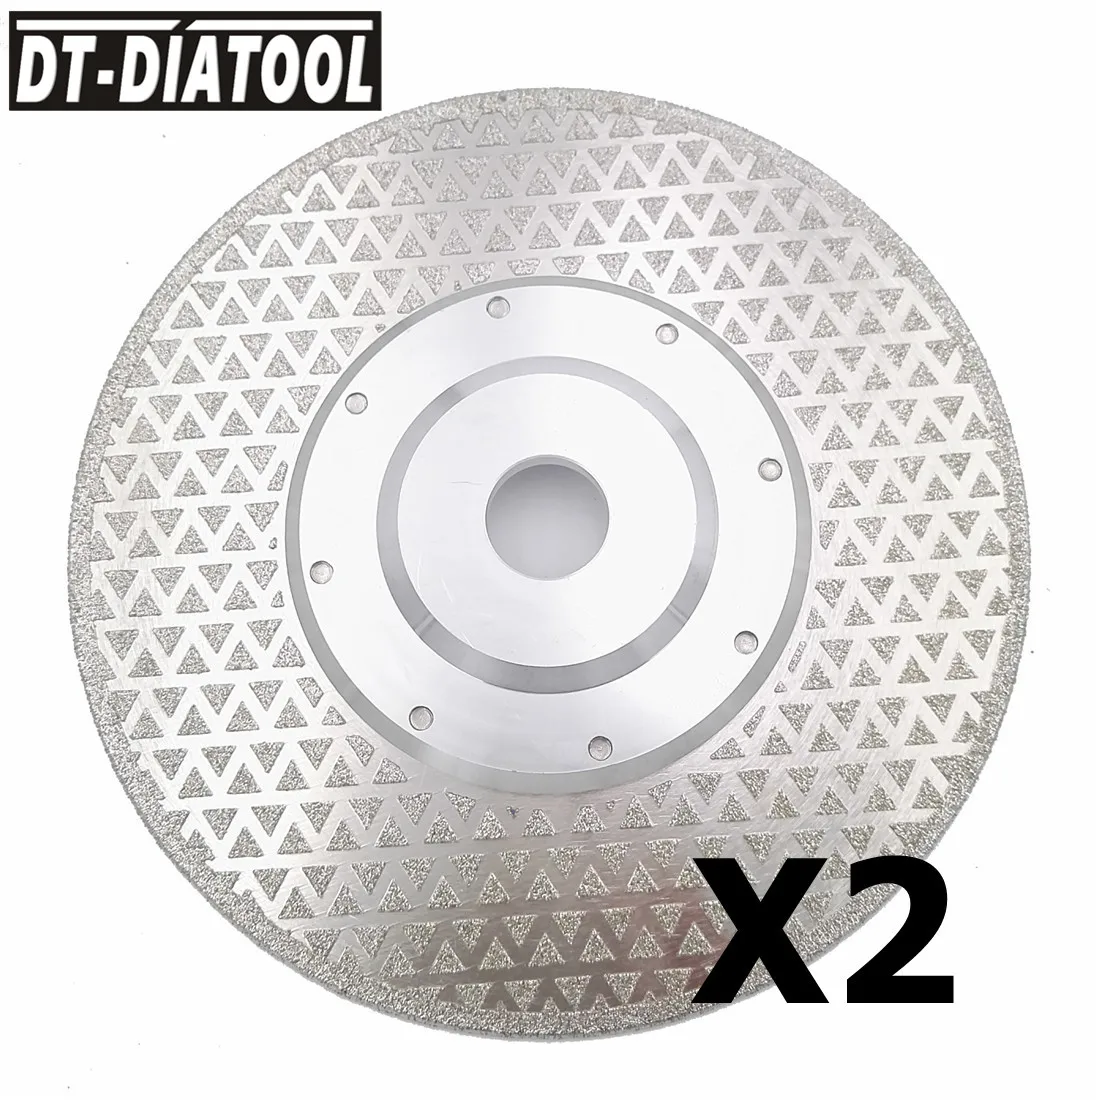 DT-DIATOOL 2pcs 7